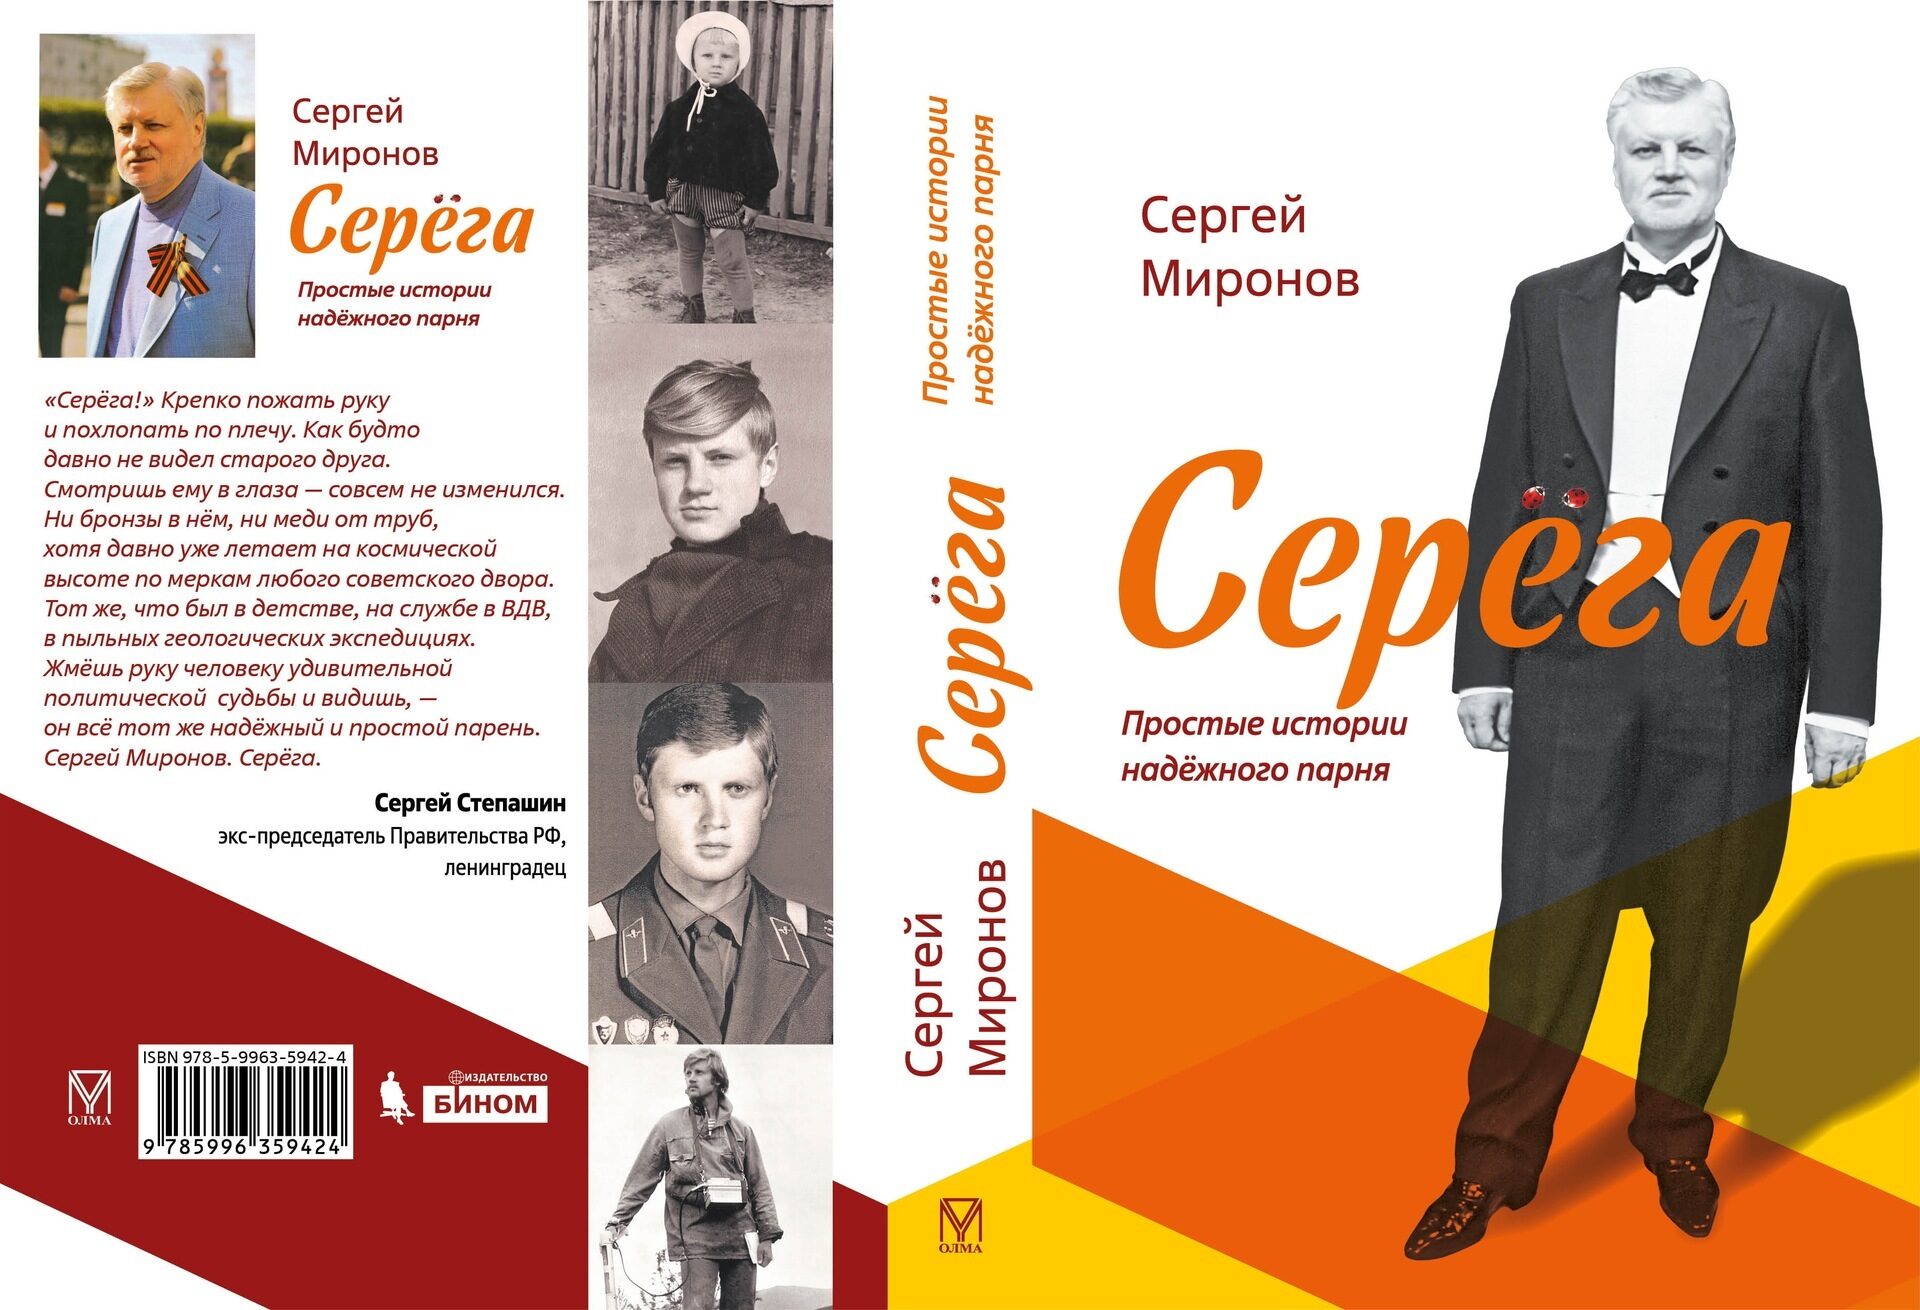 Ты просто был рассказ. Книга Сергея Миронова. Серега Миронов книга.